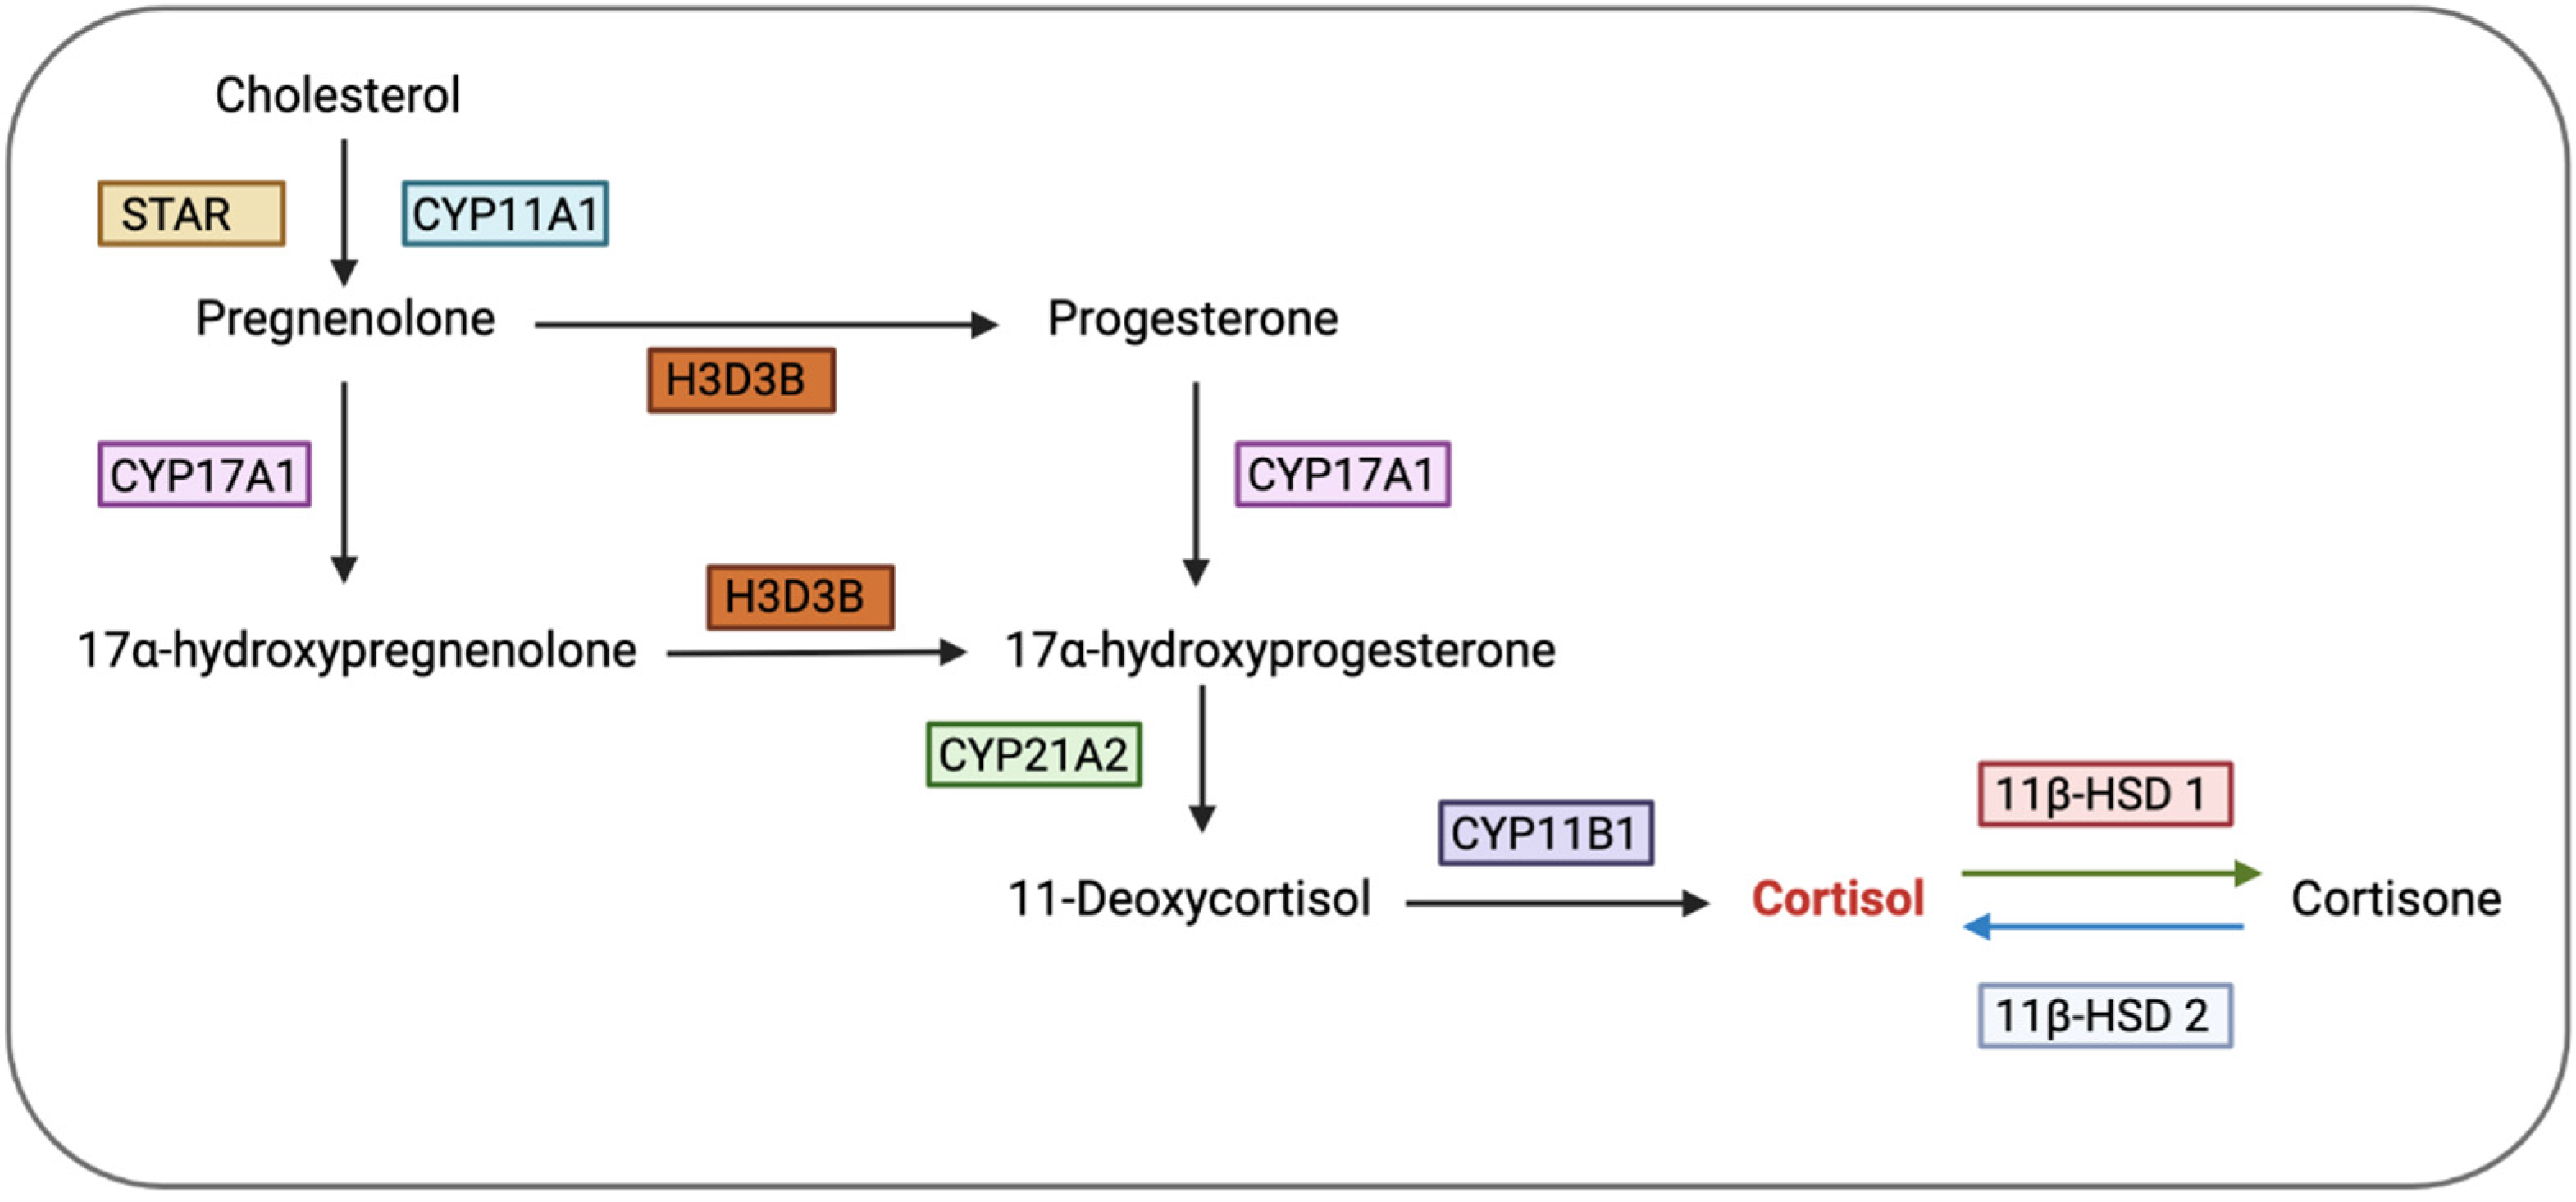 corticosteroid conversion chart